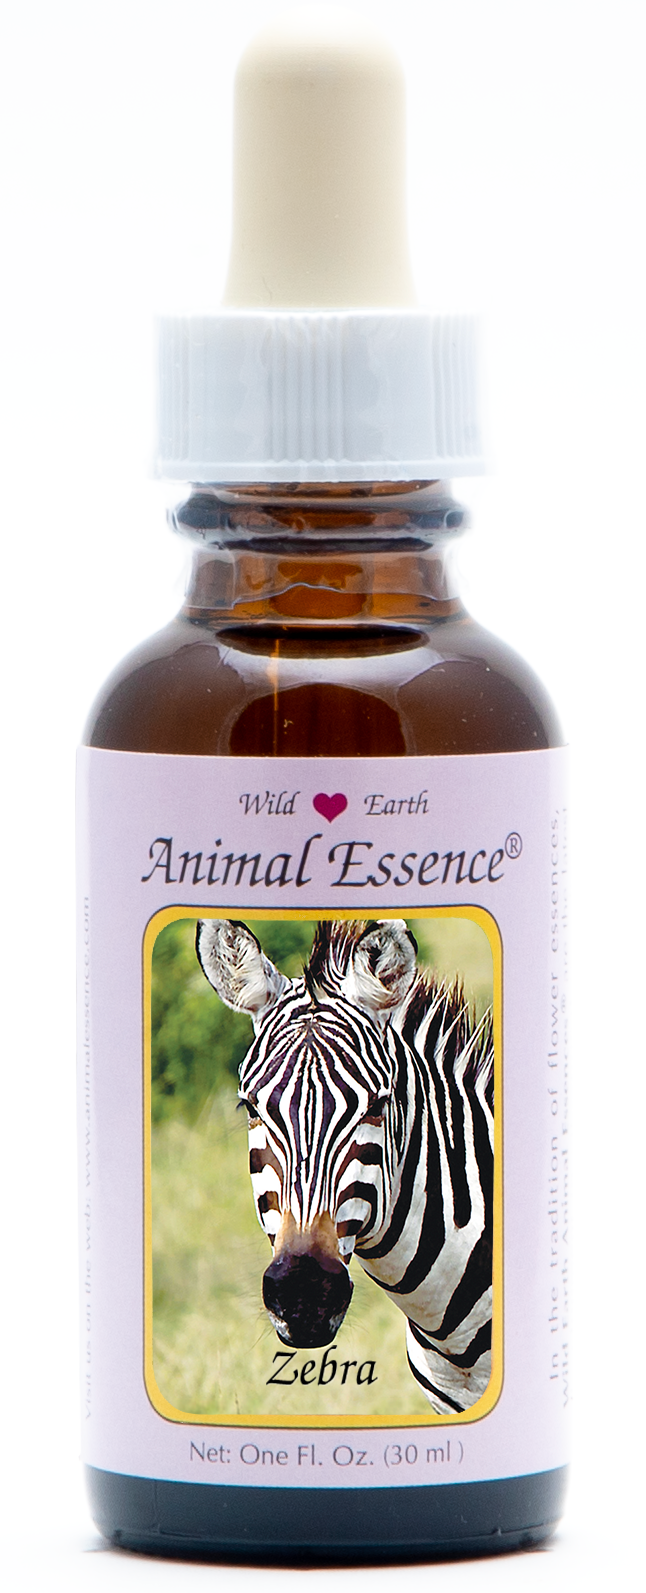 Zebra animal essence 30ml